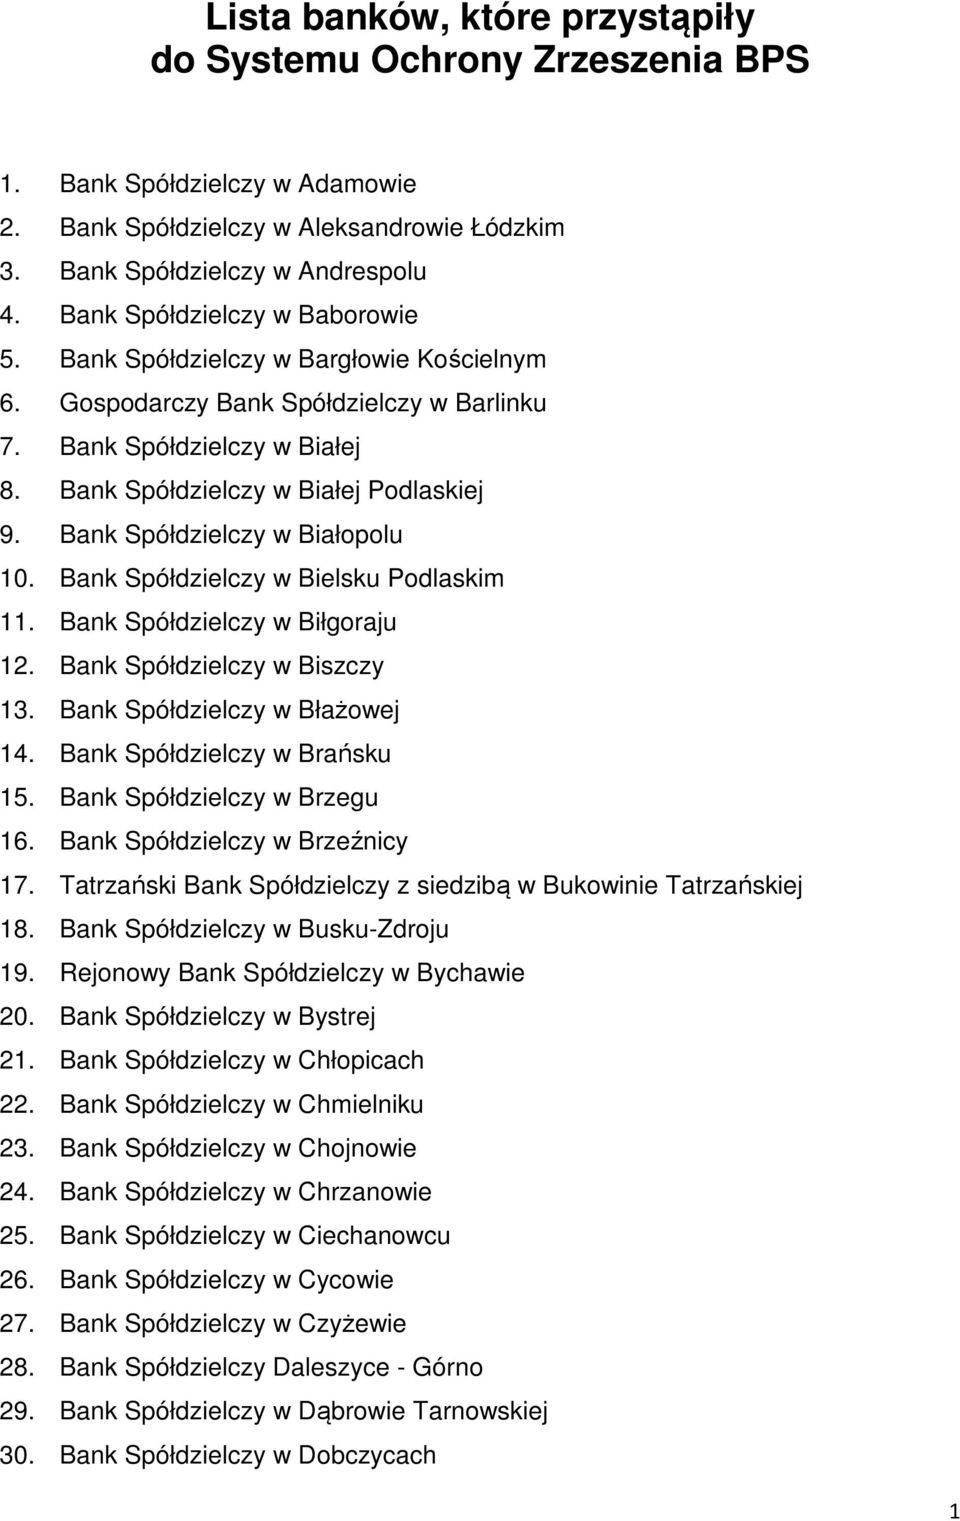 Bank Spółdzielczy w Białopolu 10. Bank Spółdzielczy w Bielsku Podlaskim 11. Bank Spółdzielczy w Biłgoraju 12. Bank Spółdzielczy w Biszczy 13. Bank Spółdzielczy w Błażowej 14.